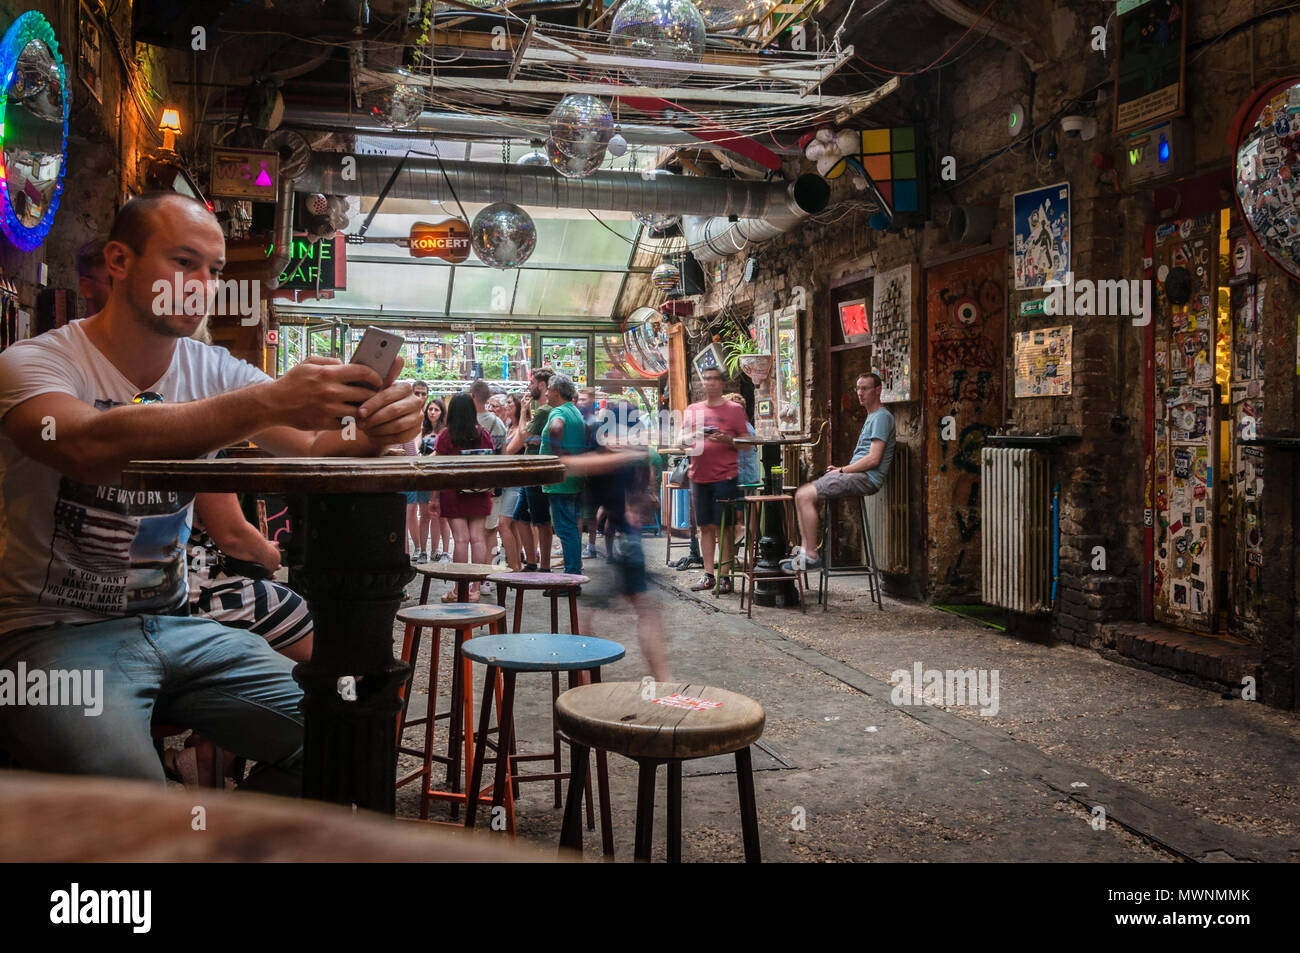 Szimpla Kert, eines der ältesten Ruine Pubs In Budapest Stockfoto